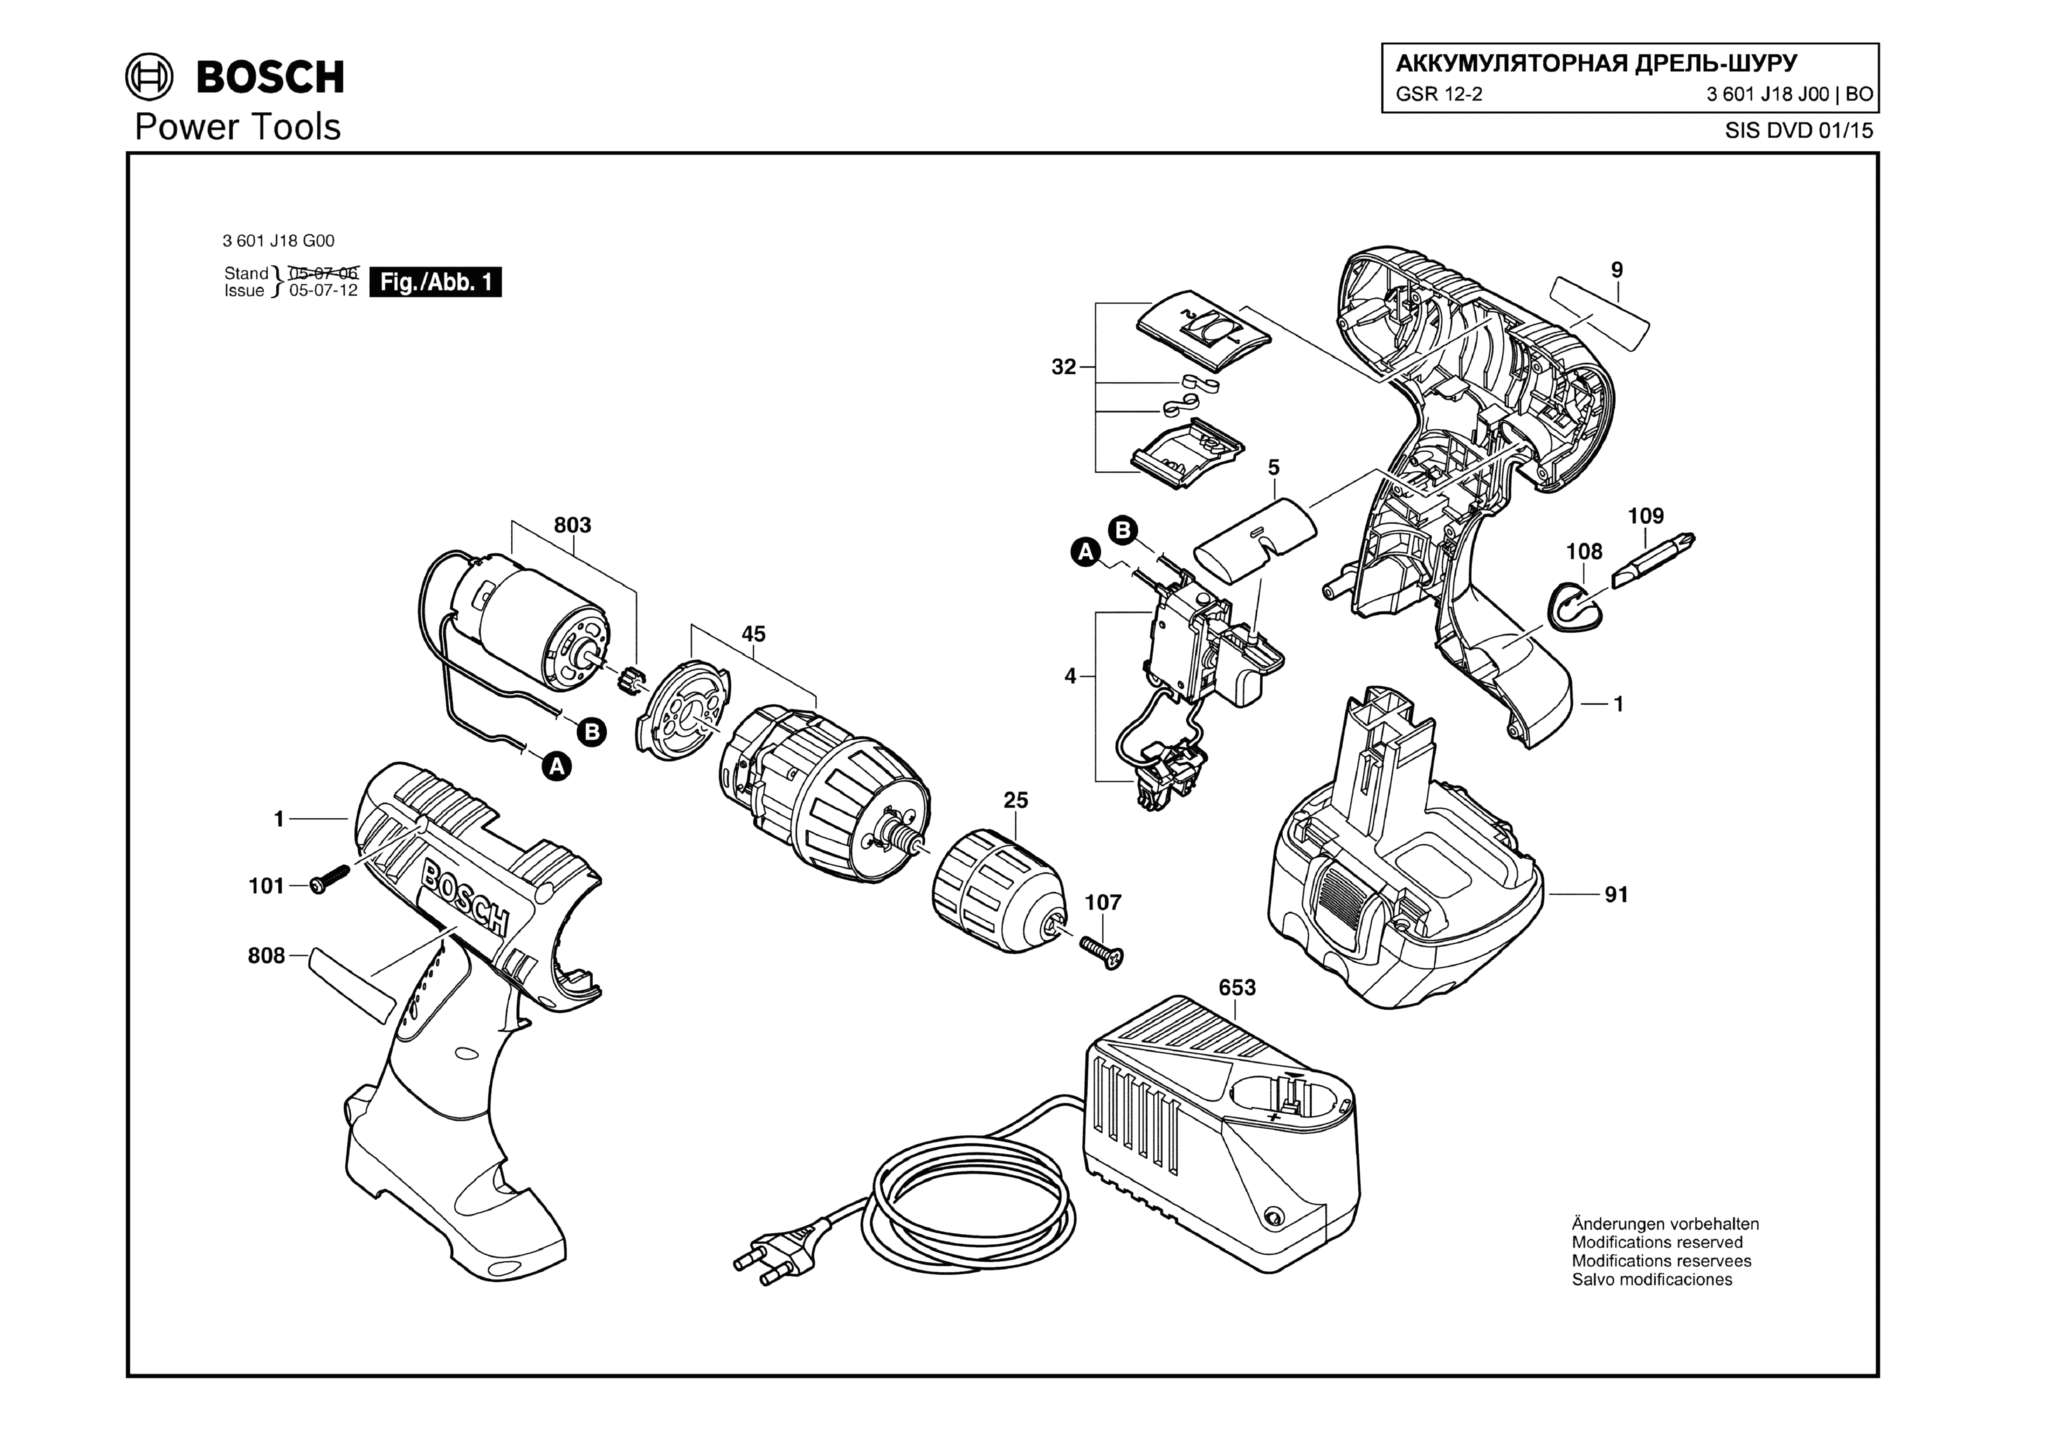 Запчасти, схема и деталировка Bosch GSR 12-2 (ТИП 3601J18J00)